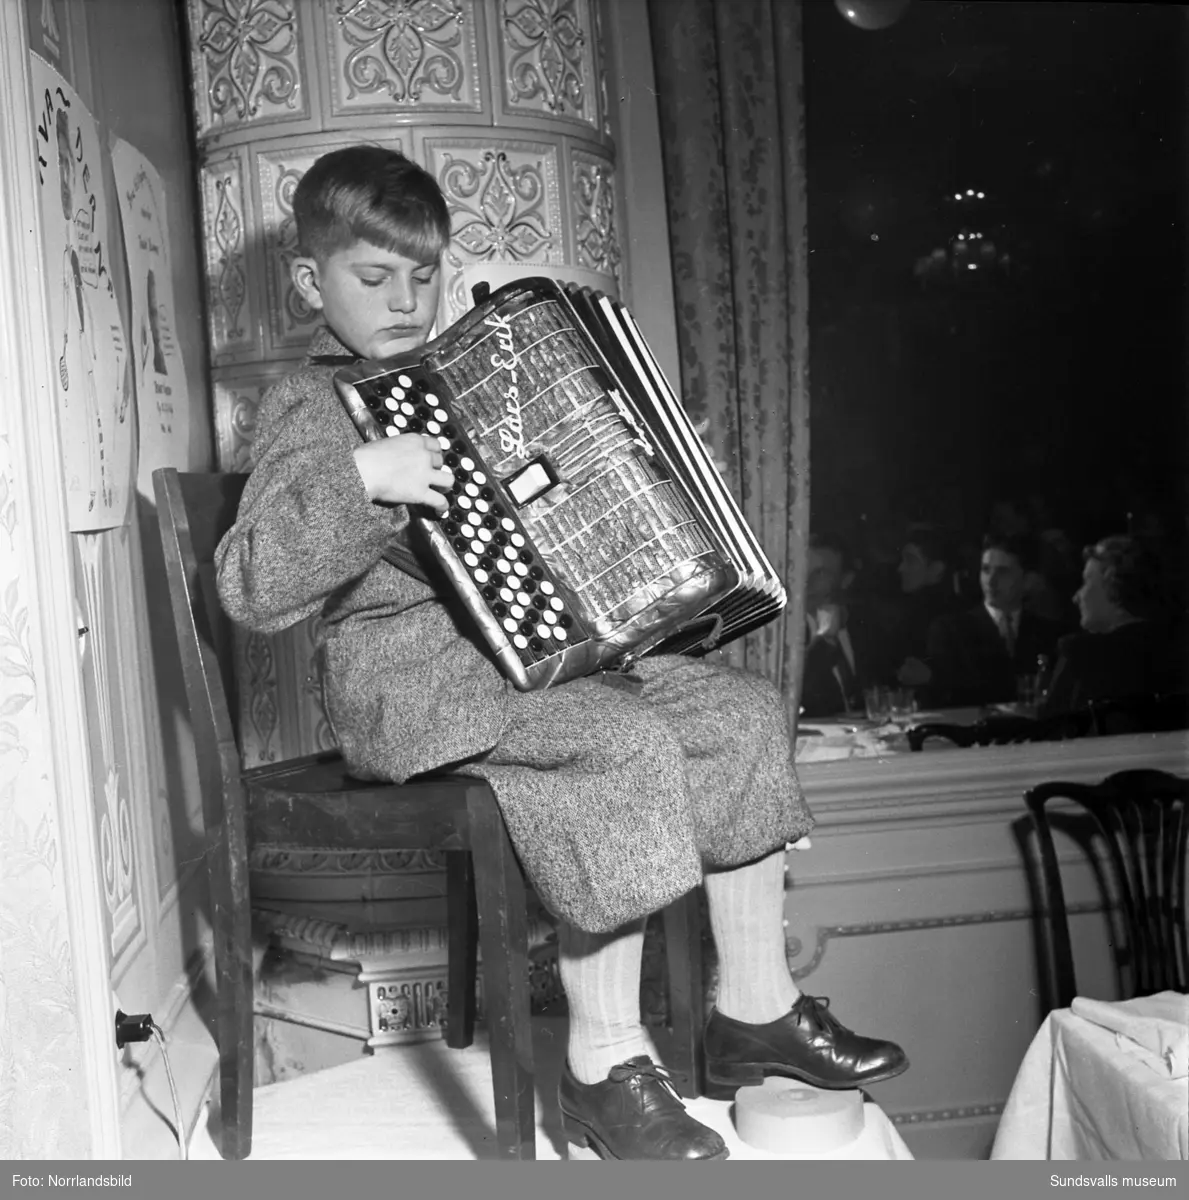 Efter GIF Sundsvalls 47:e årsmöte som hölls på hotell Knaust i november 1950 samlades över 100 giffare med respektive i hotellets festvåning för den traditionsenliga kamratfesten. Där ska stämningen ha varit på topp hela kvällen med bland annat uppträdande av GIF-legendaren Allan ”Mack-Allan” Sundboms musikaliske tioårige son. På en provisorisk scen trakterade Lars-Erik Sundbom sitt femradiga dragspel som en hel karl. Kvällen avslutades sedan med dans till tonerna av Ågrens musikkapell.